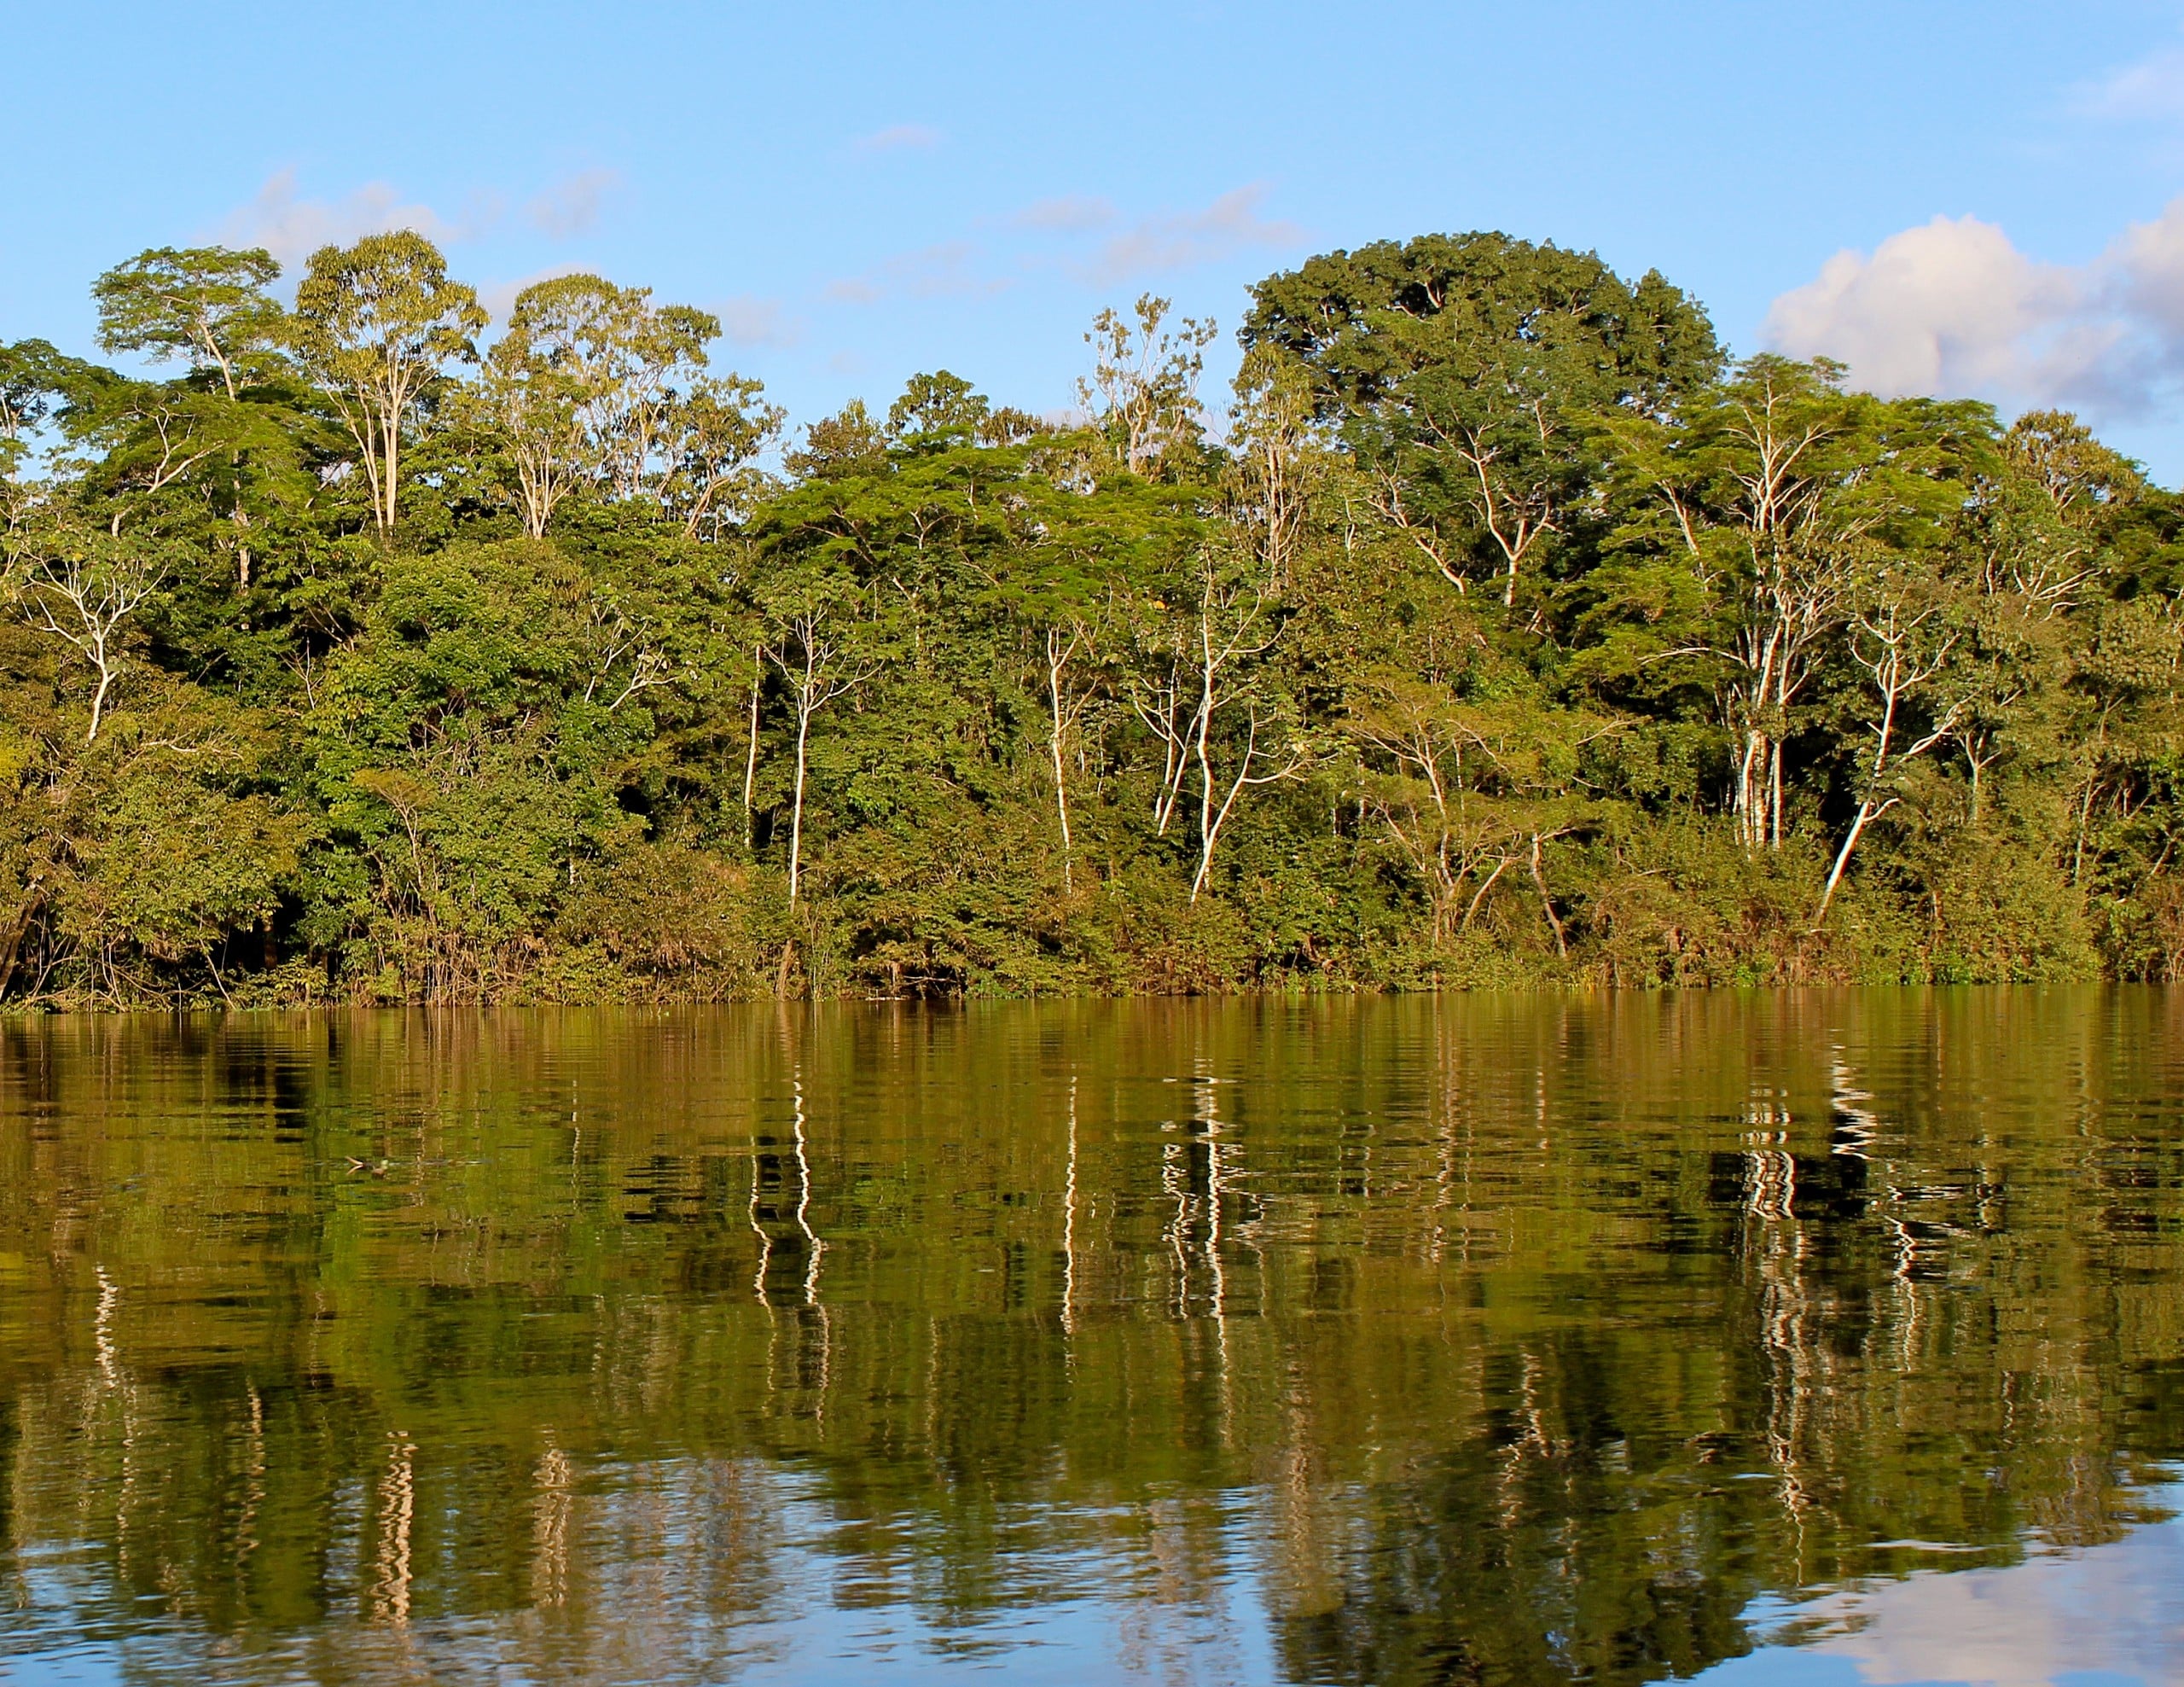 Millionen Menschen leben vom Amazonas-Regenwald. Bildquelle: Antonio Campoy, CC BY 2.0 , via Wikimedia Commons